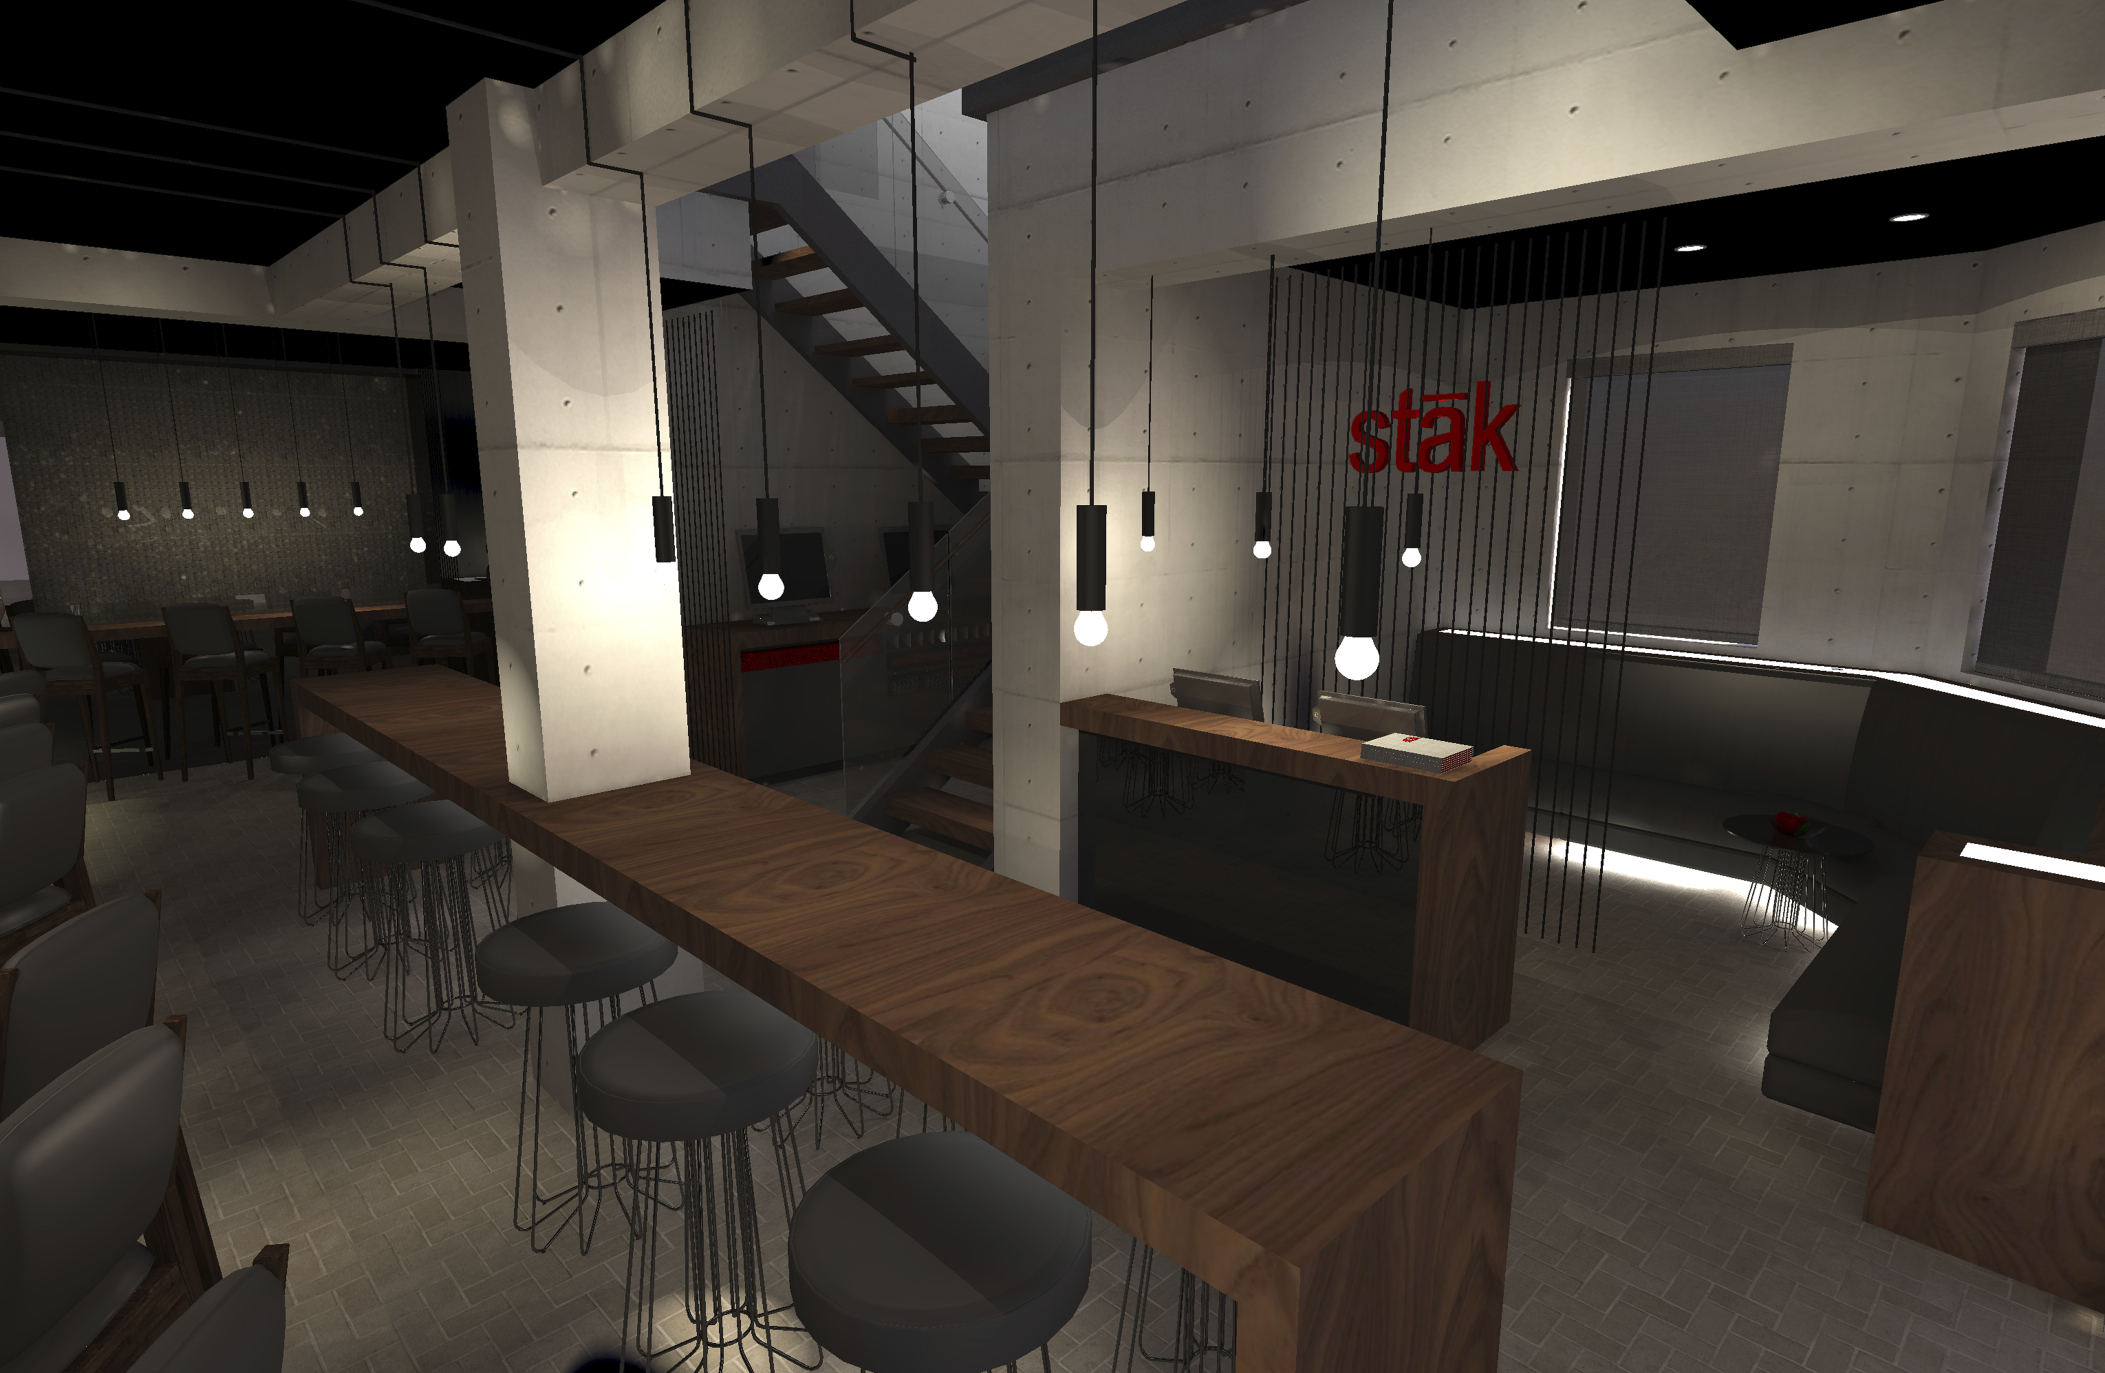 Stak rendering 1(no title block).jpg